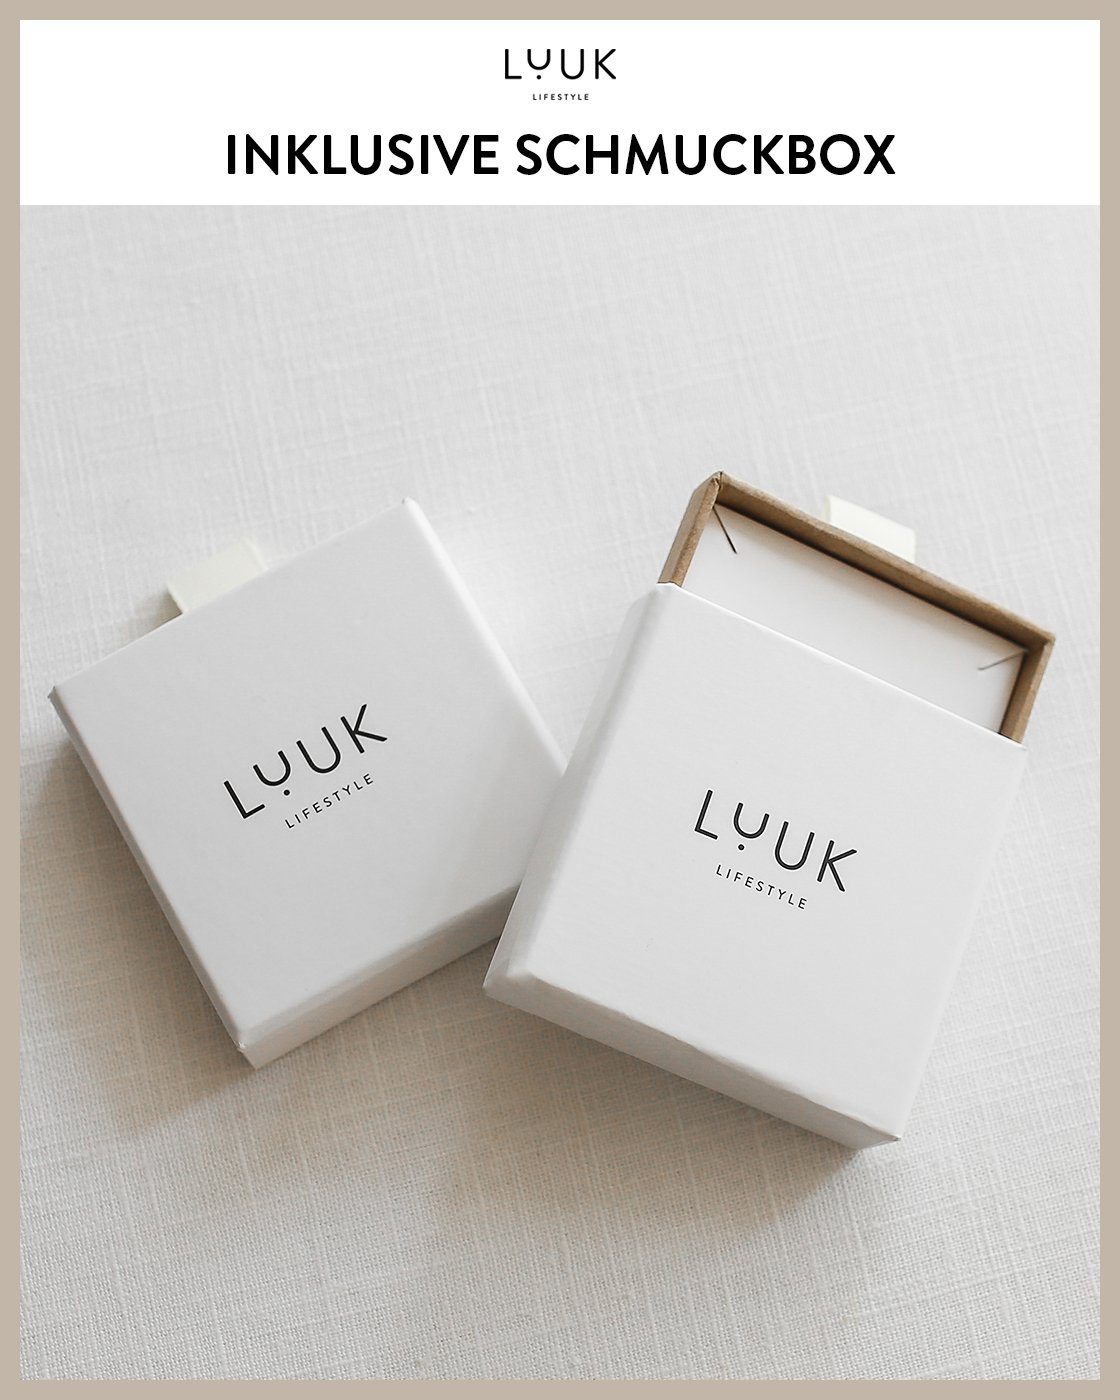 LUUK LIFESTYLE Schmuckset Raute, inklusive Schmuckbox toller Gold